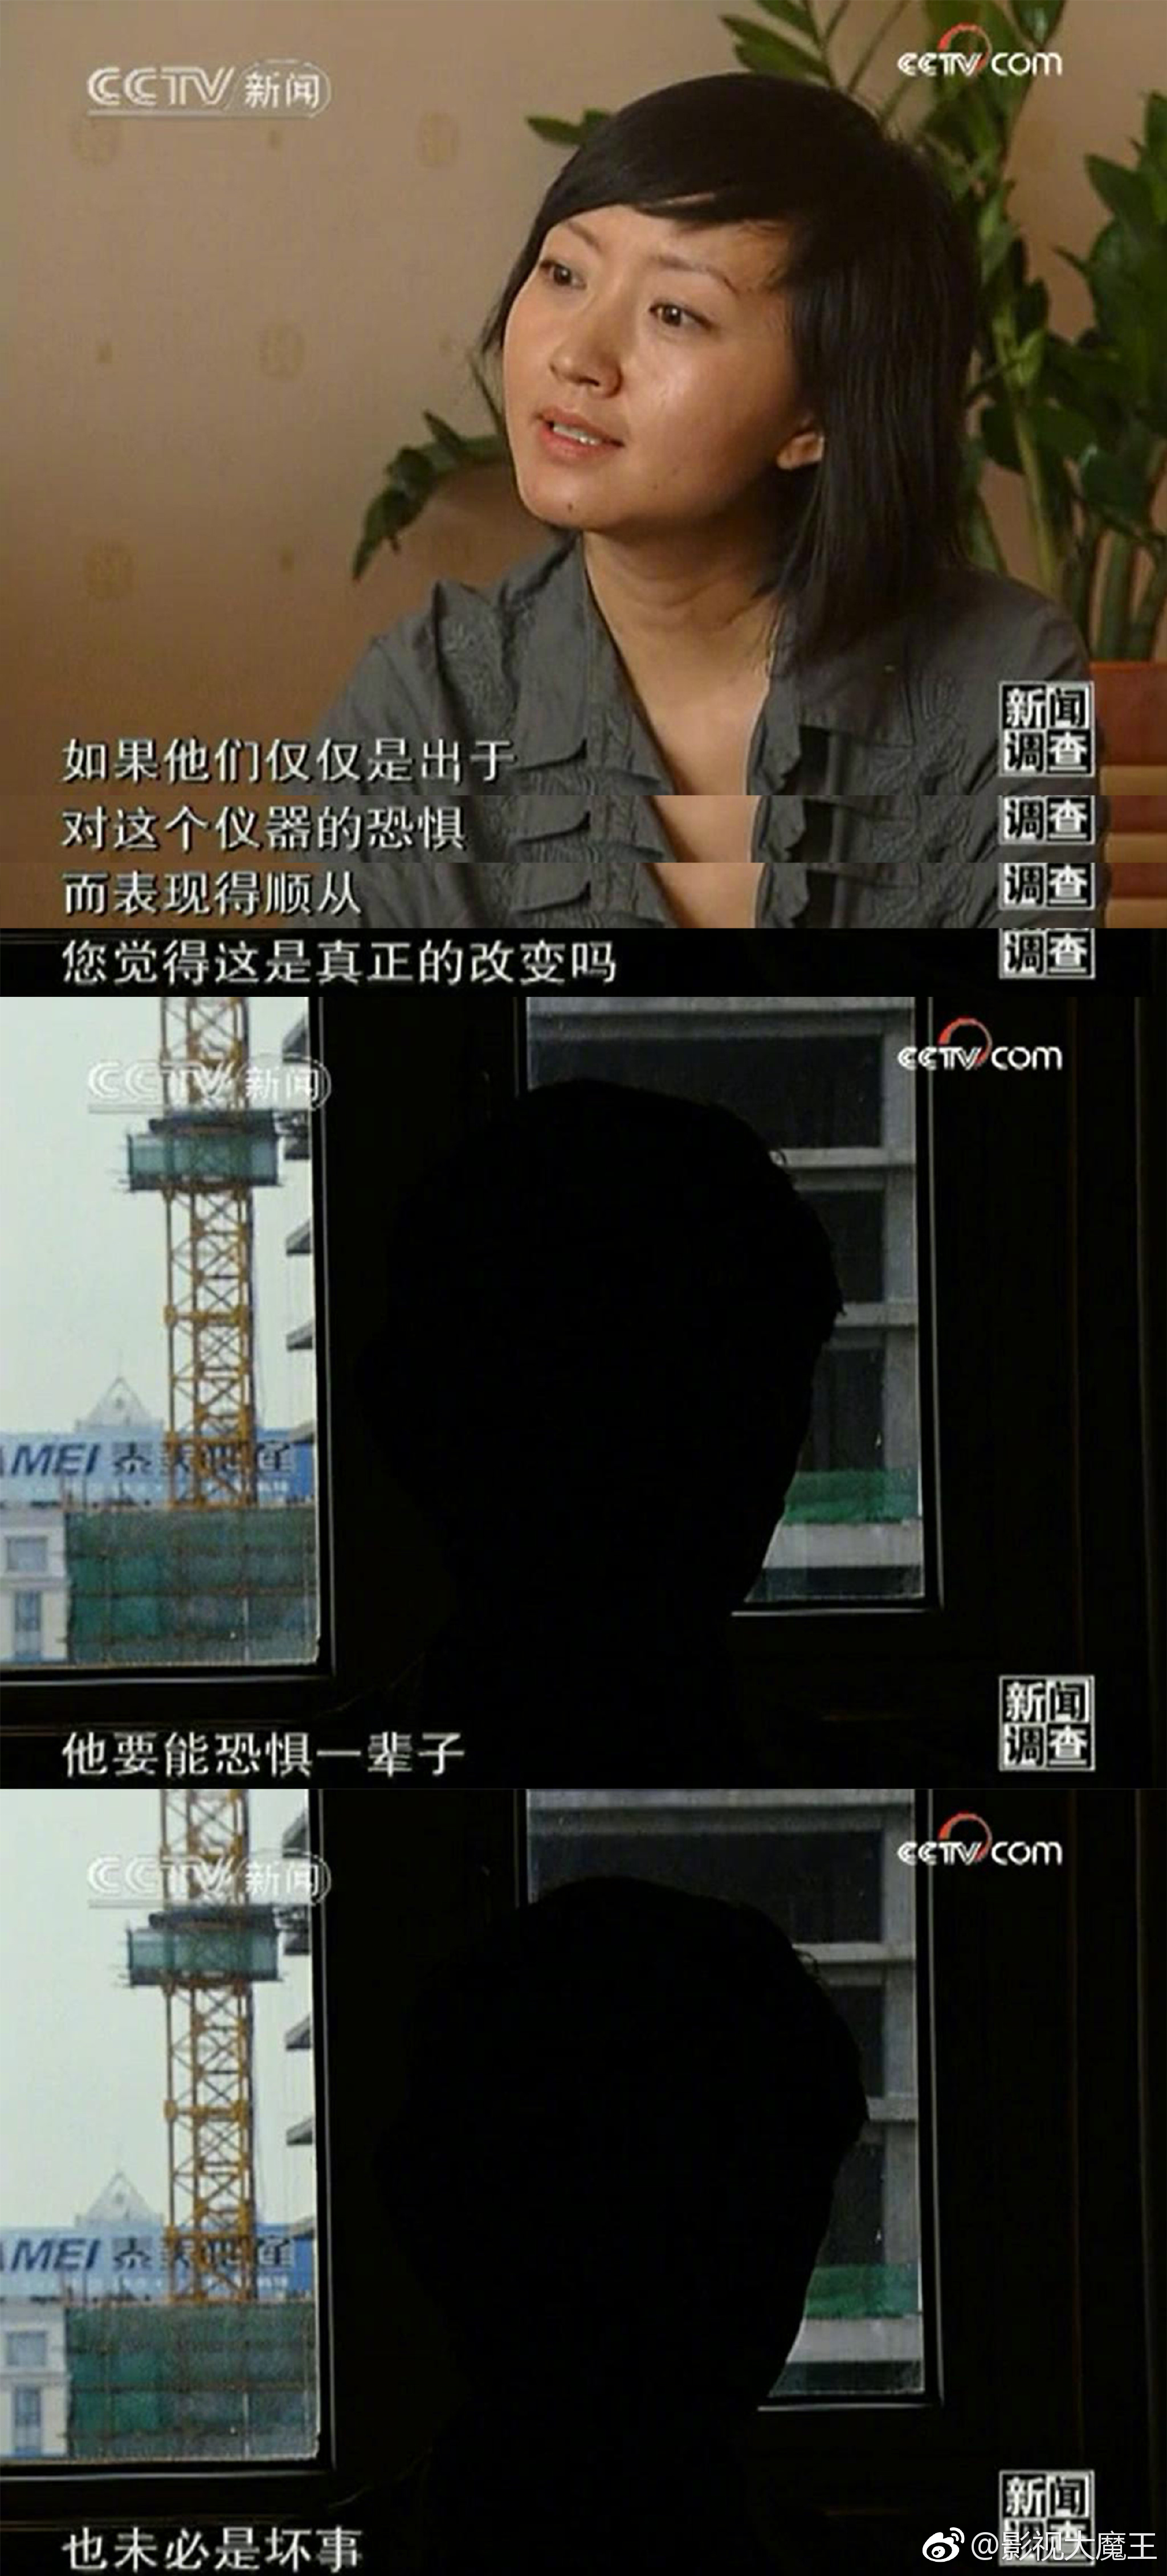 强烈推荐大家去B站看看柴静对杨永信的采访《网瘾之戒》